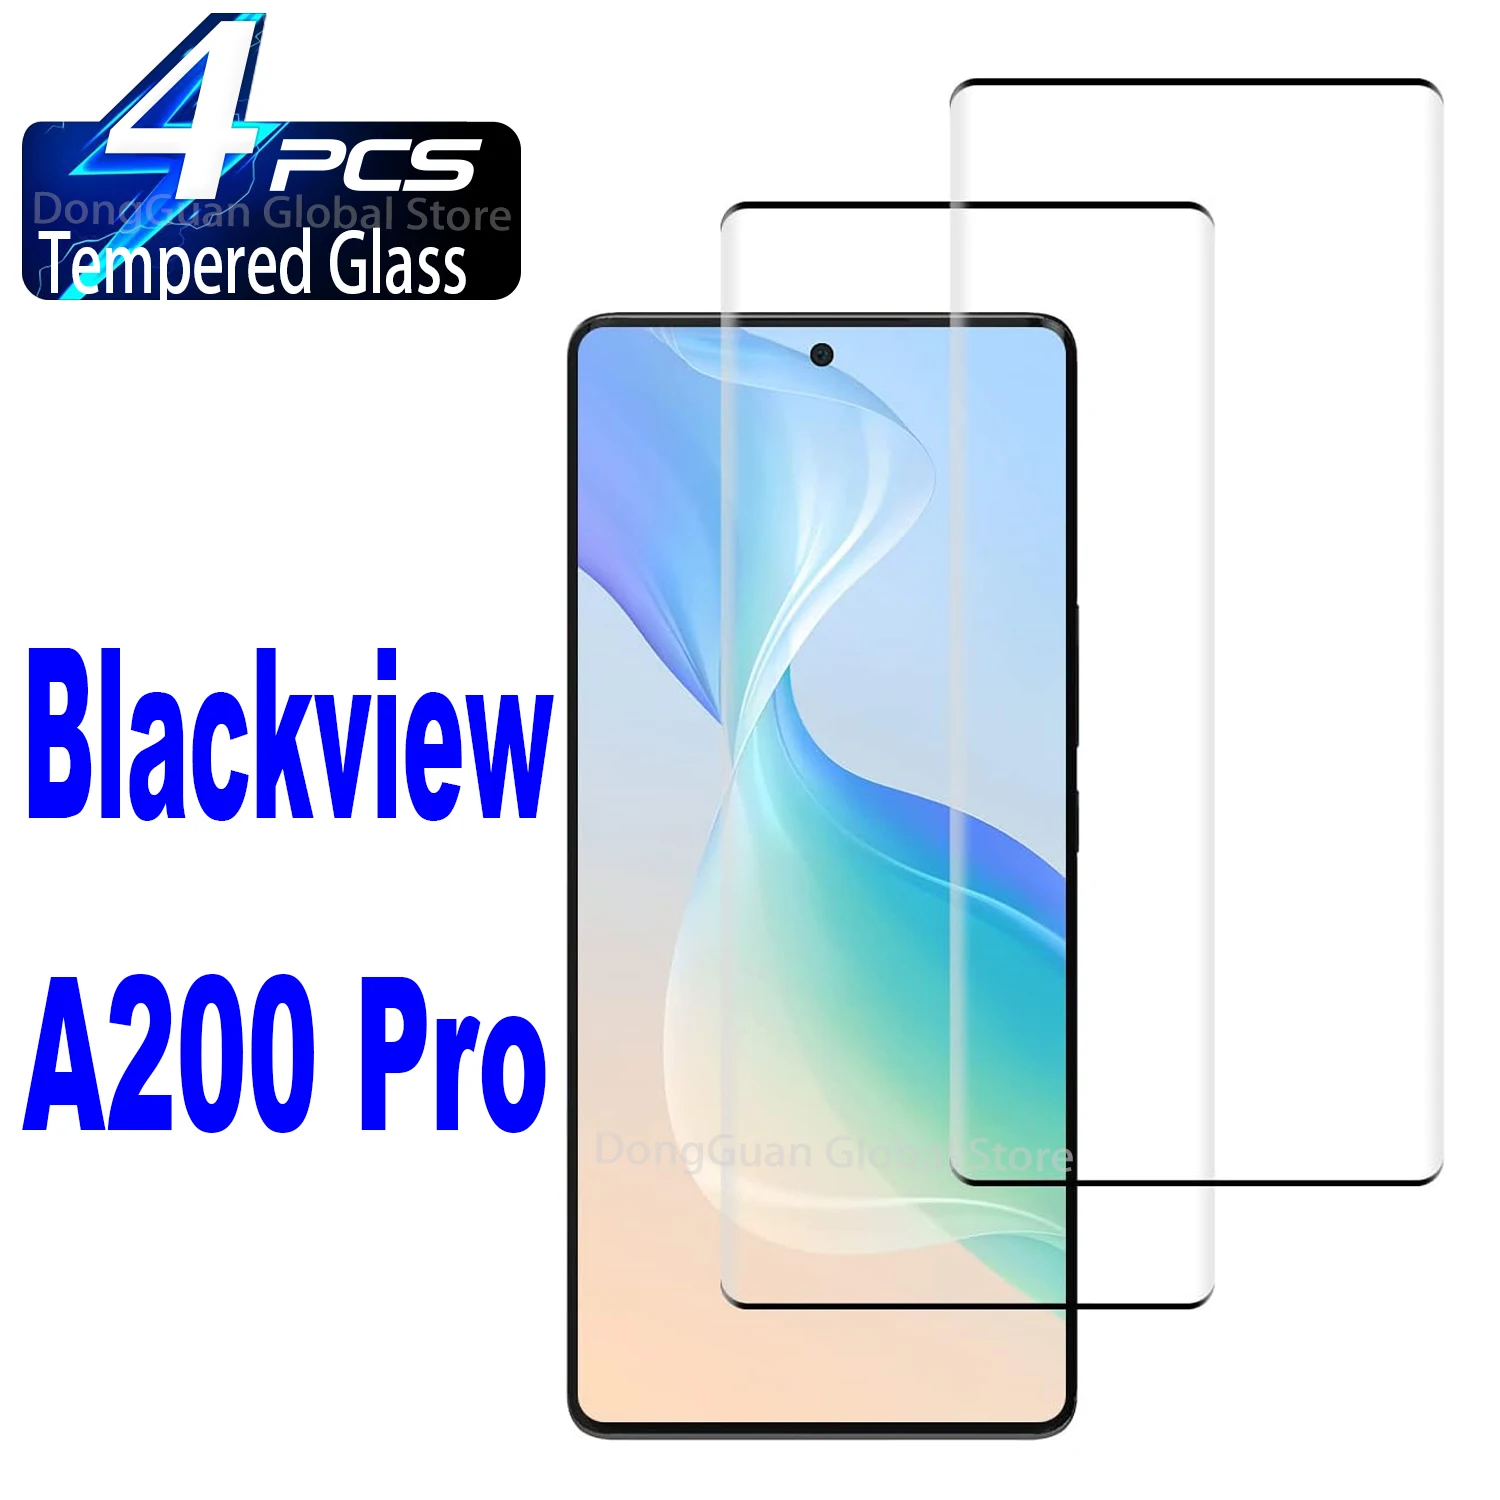 1/4 шт. 3D закаленное стекло для Blackview A200 Pro Защитная стеклянная пленка